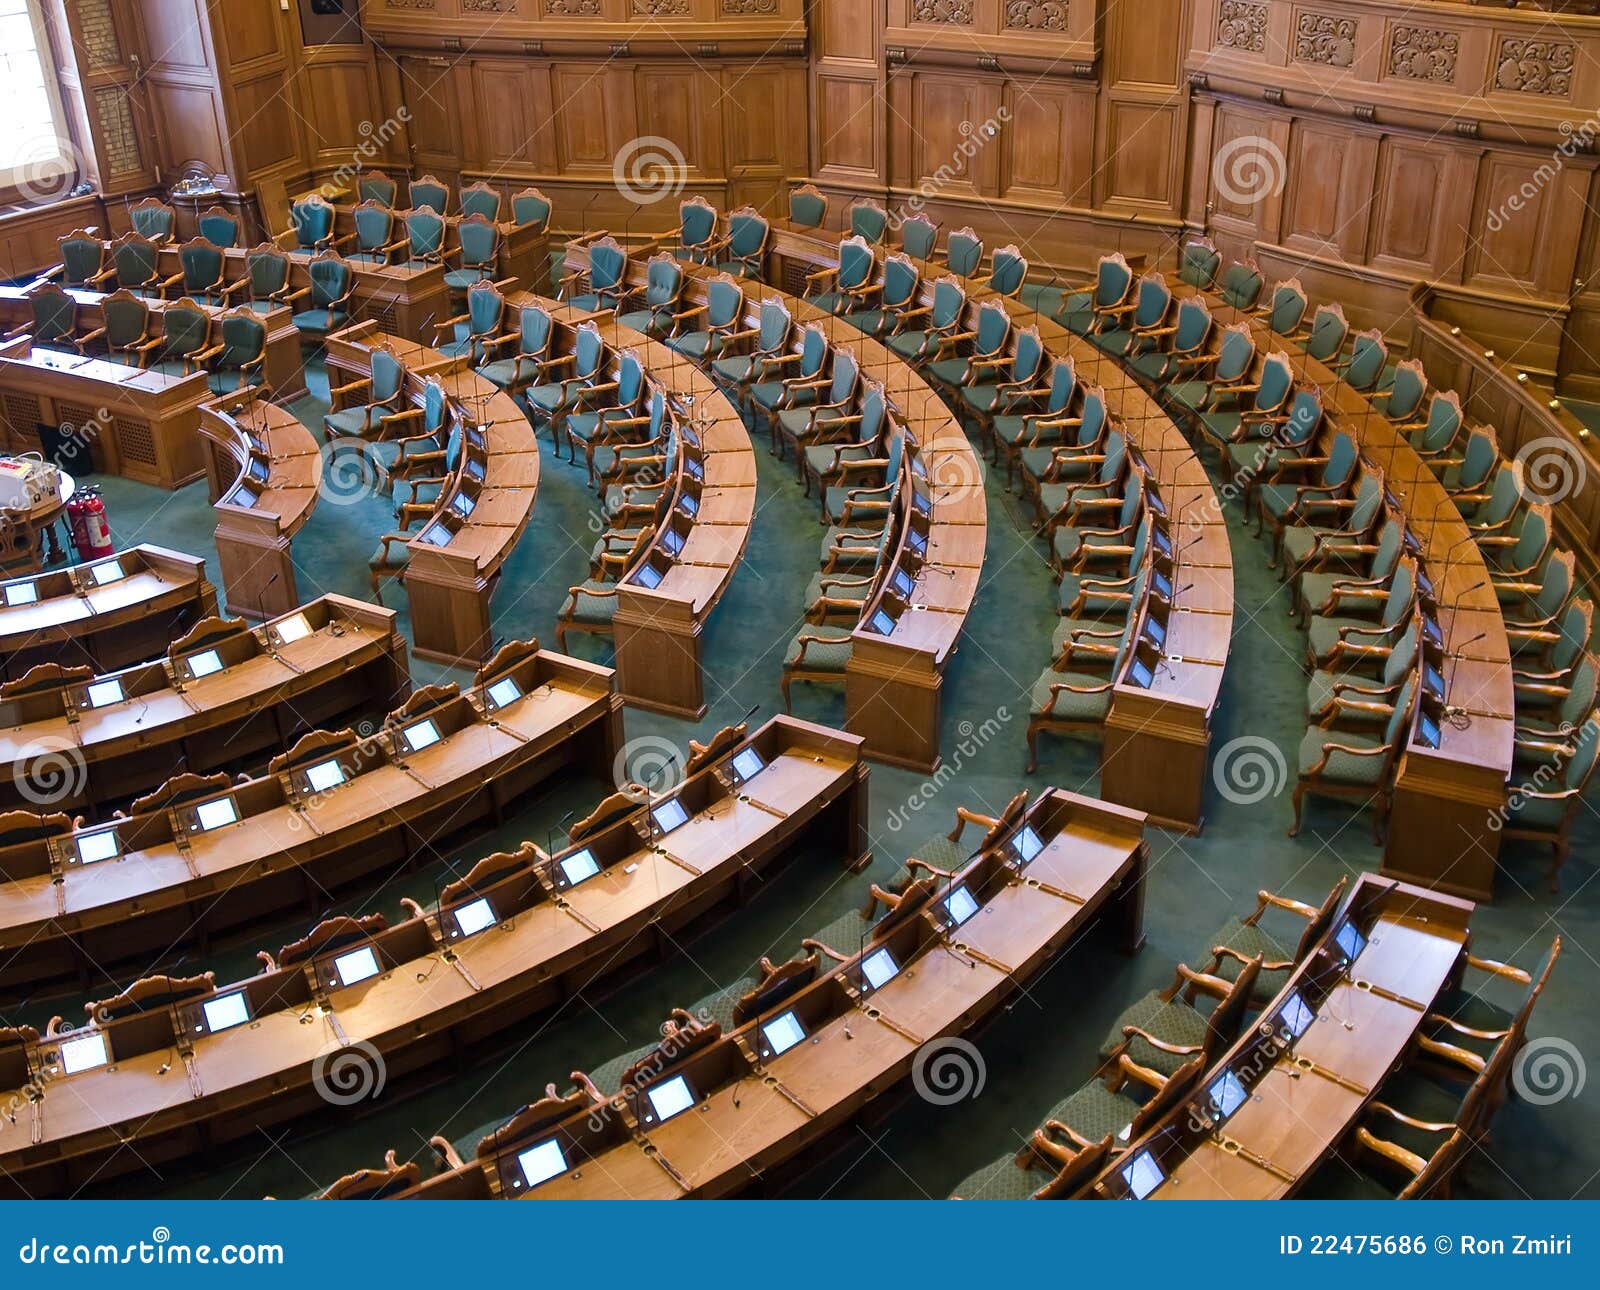 interior of a parliament senate hall